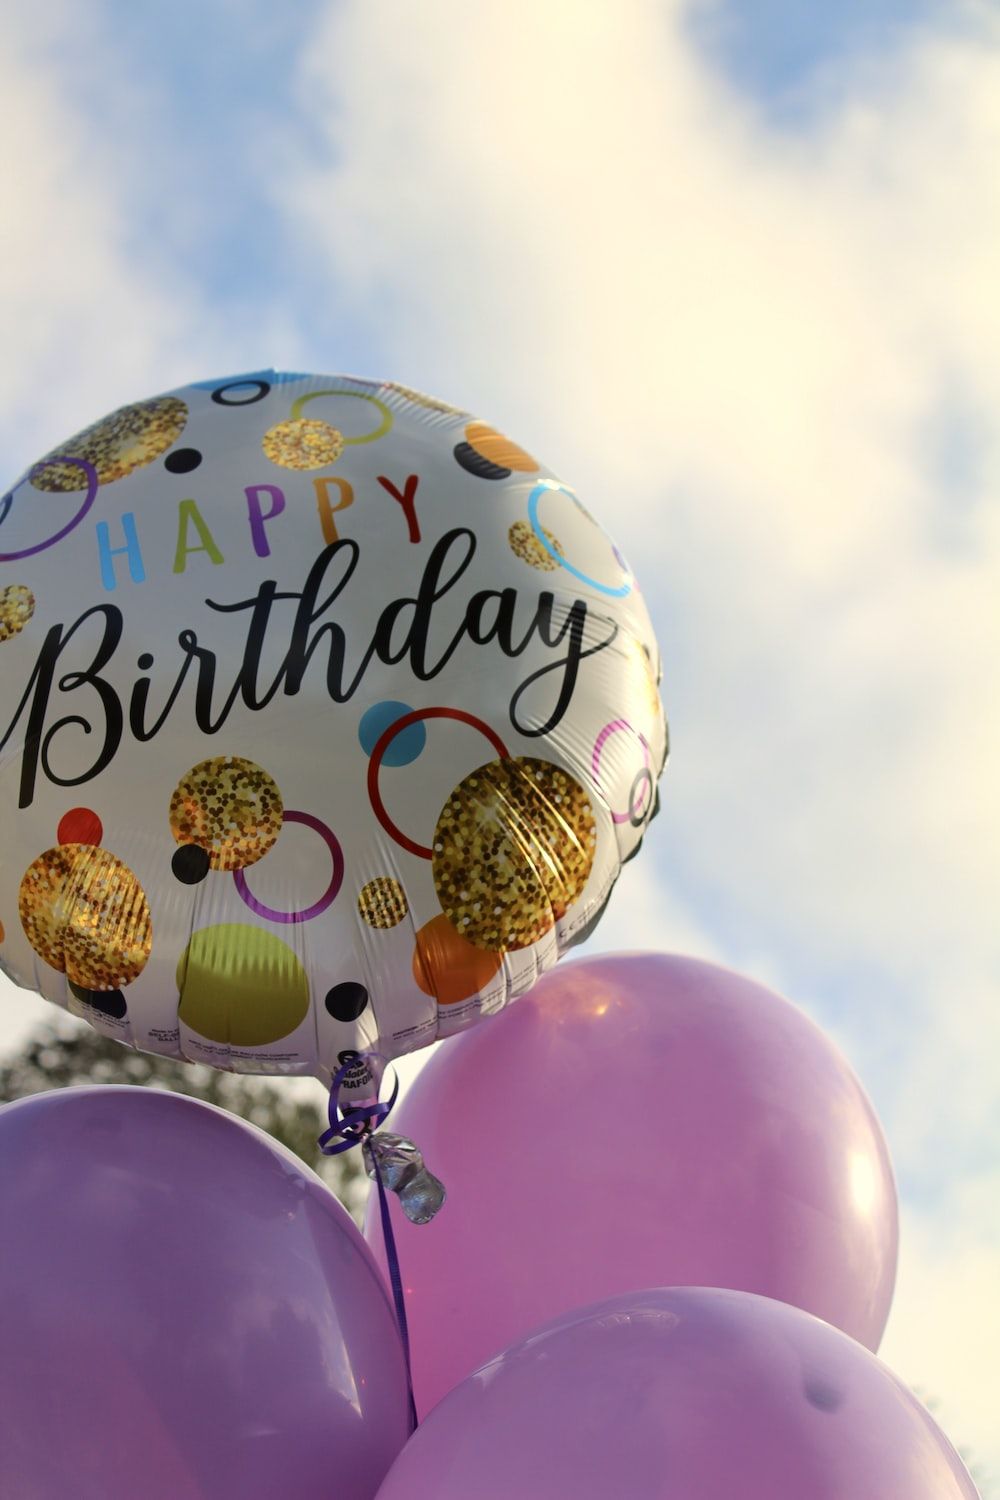 A balloon with happy birthday written on it - Birthday, balloons, happy